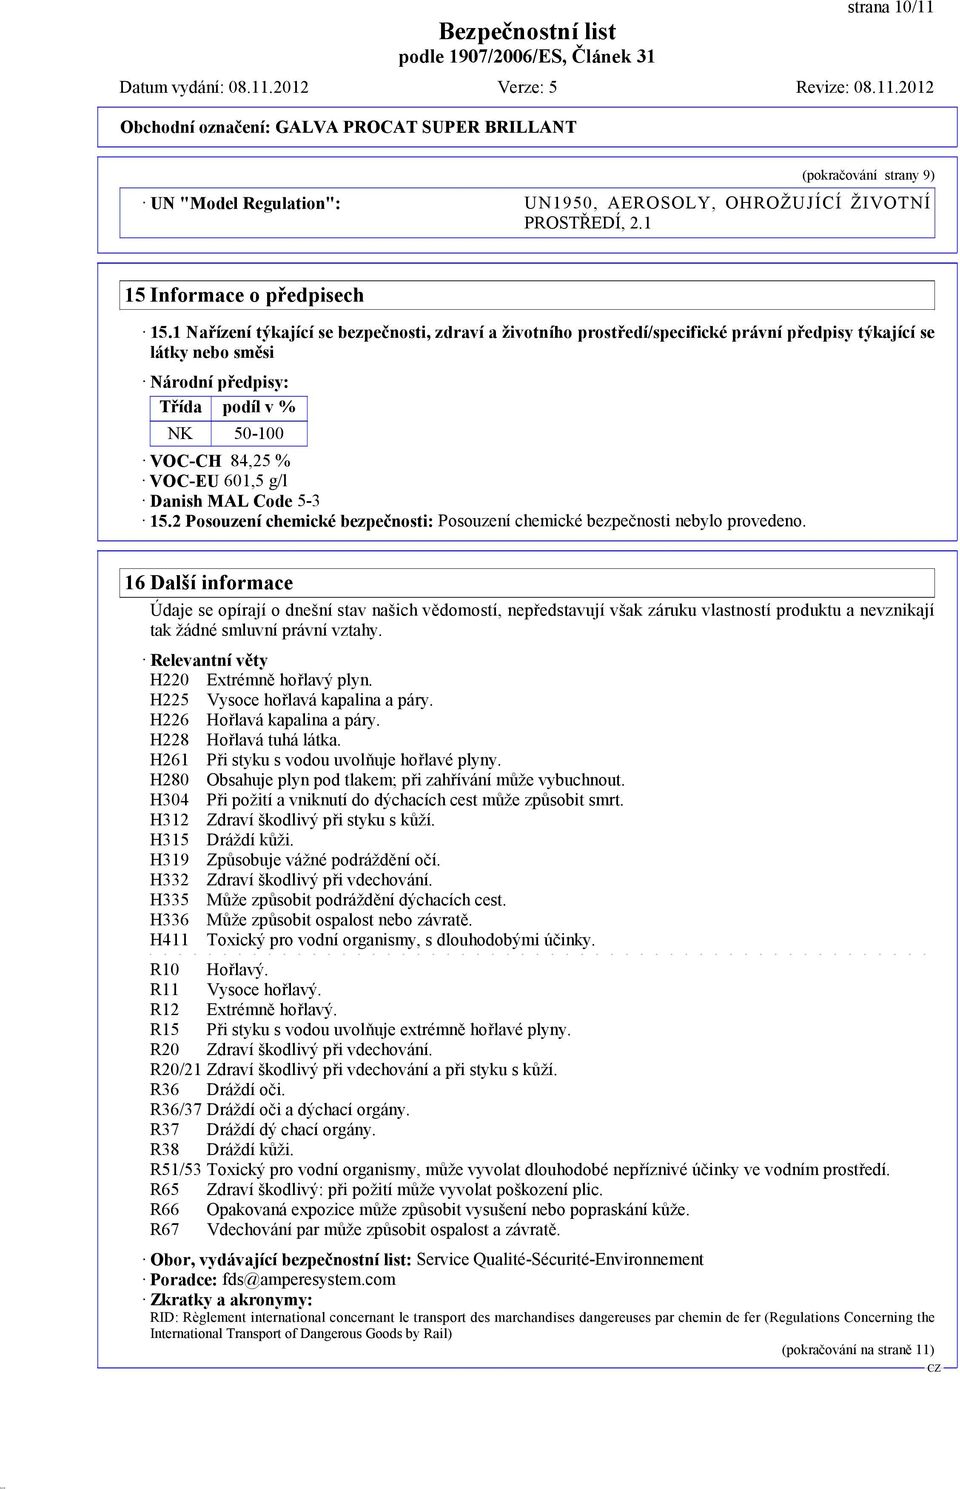 Danish MAL Code 5-3 15.2 Posouzení chemické bezpečnosti: Posouzení chemické bezpečnosti nebylo provedeno.